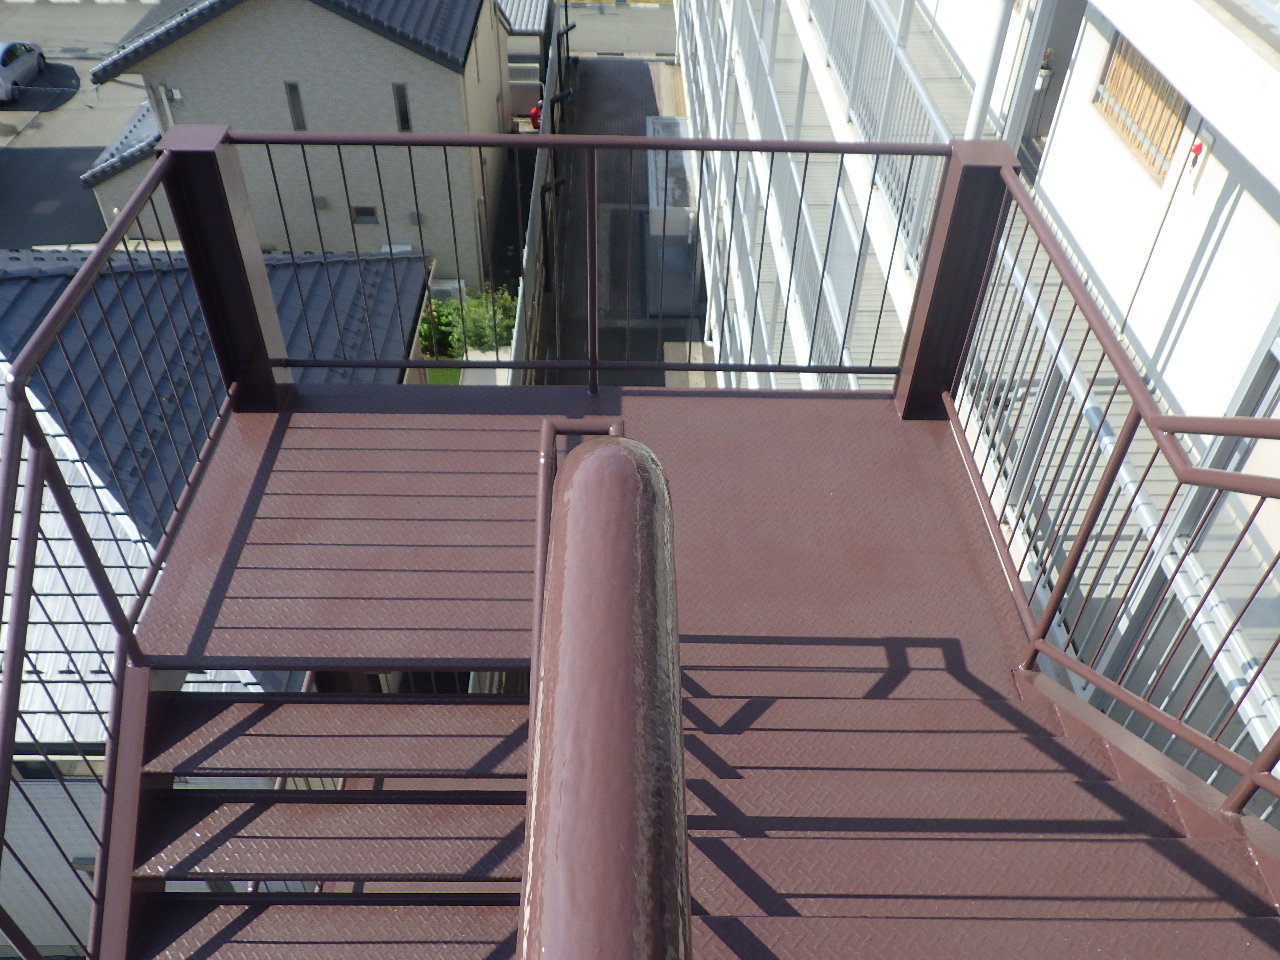 マンション階段塗装